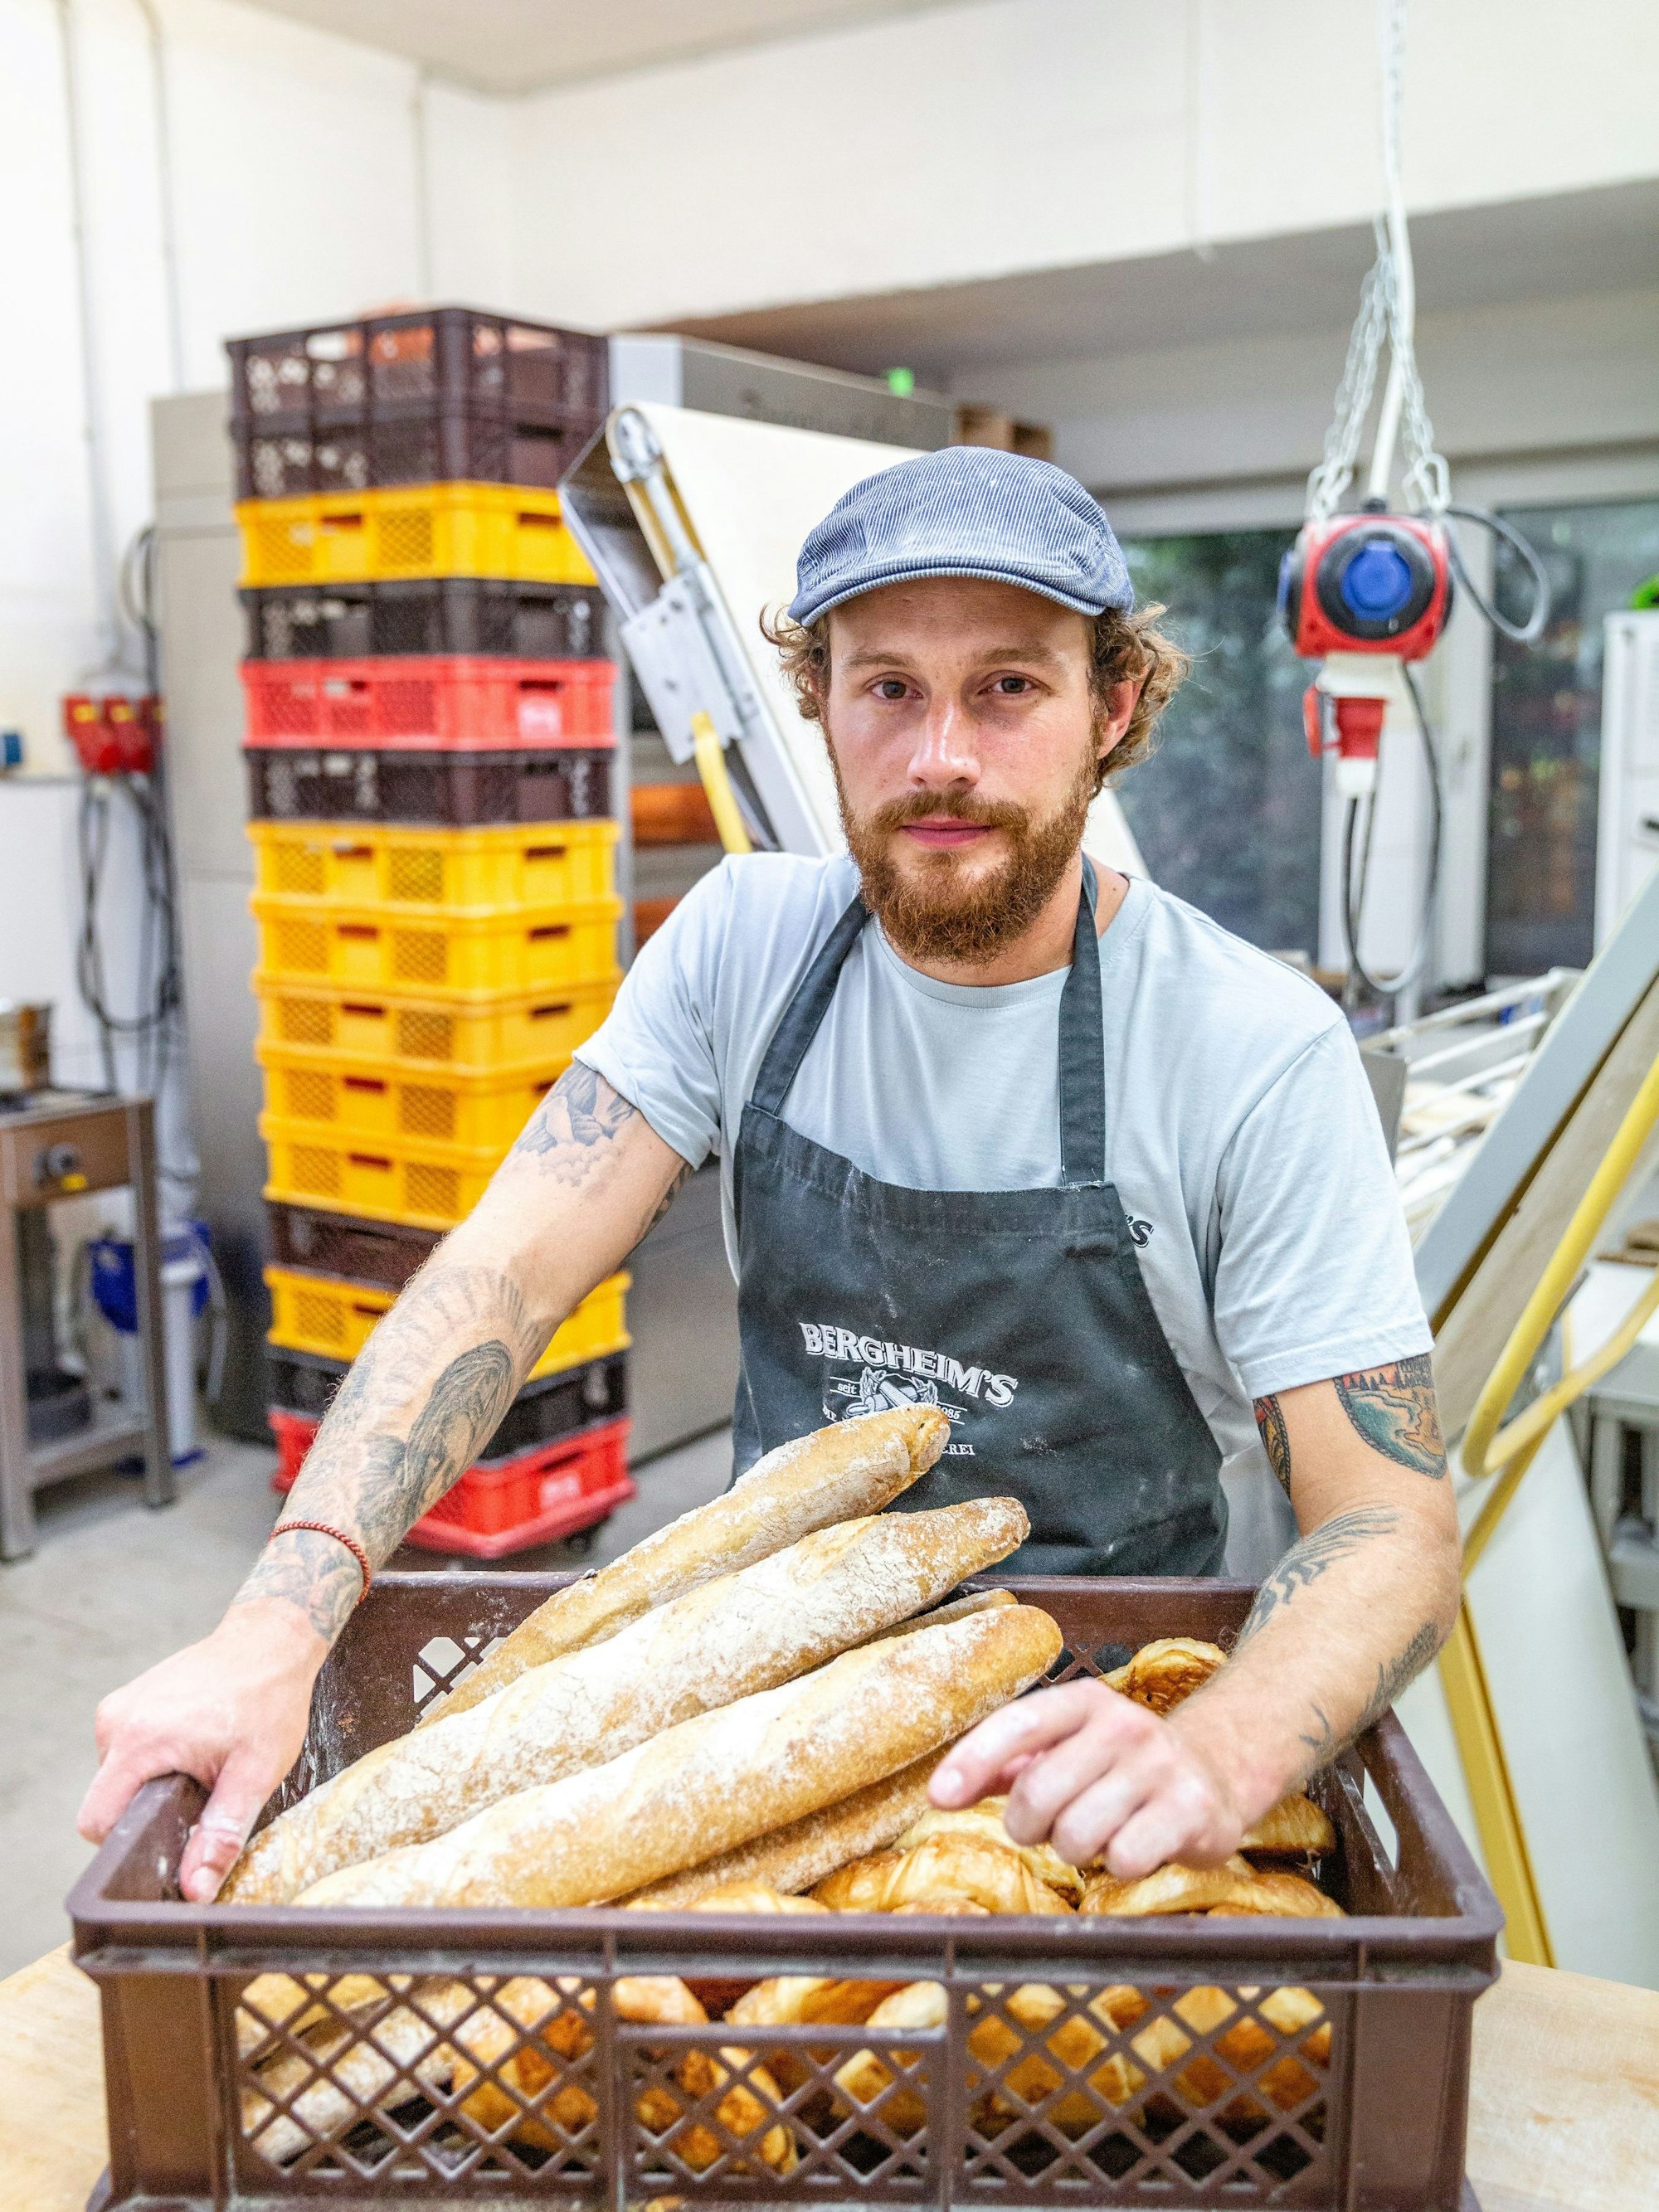 Bäckermeister Tim Bergheim  steht mit einem Korb voller Ciabatta-Brote in der Backstube der Bäckerei "Bergheim's - Die Meisterbäckerei".